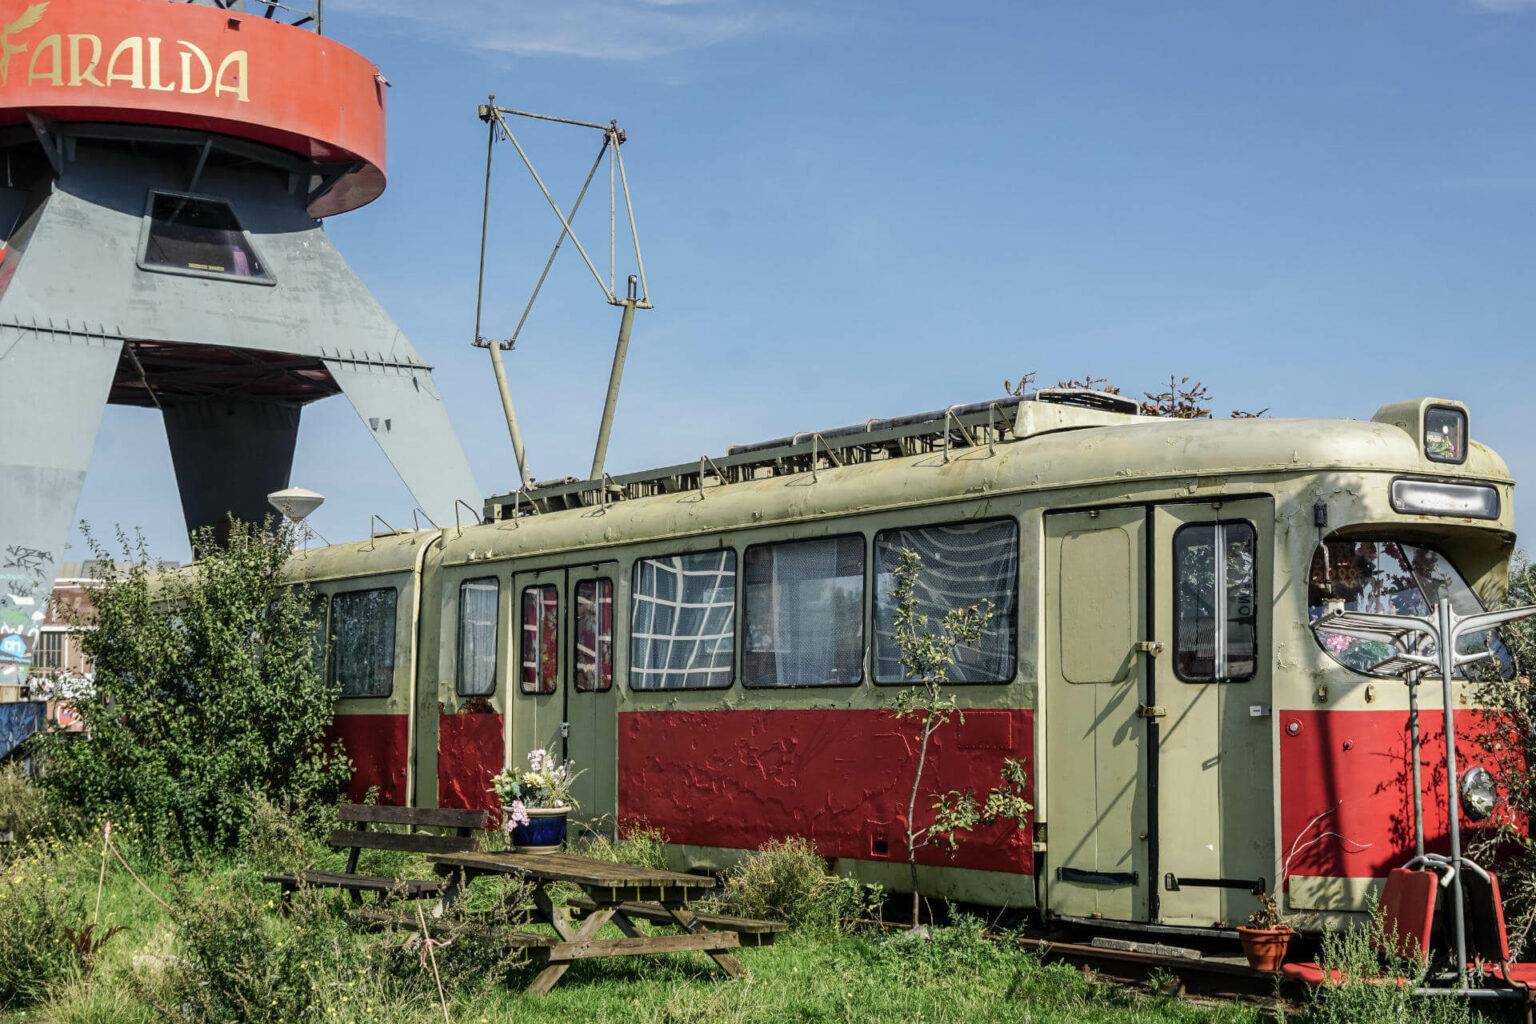 Auf den NDSM Gelände findet man allerlei Kurioses – von einer ausrangierten Straßenbahn bis hin zum Kranhotel Faralda.